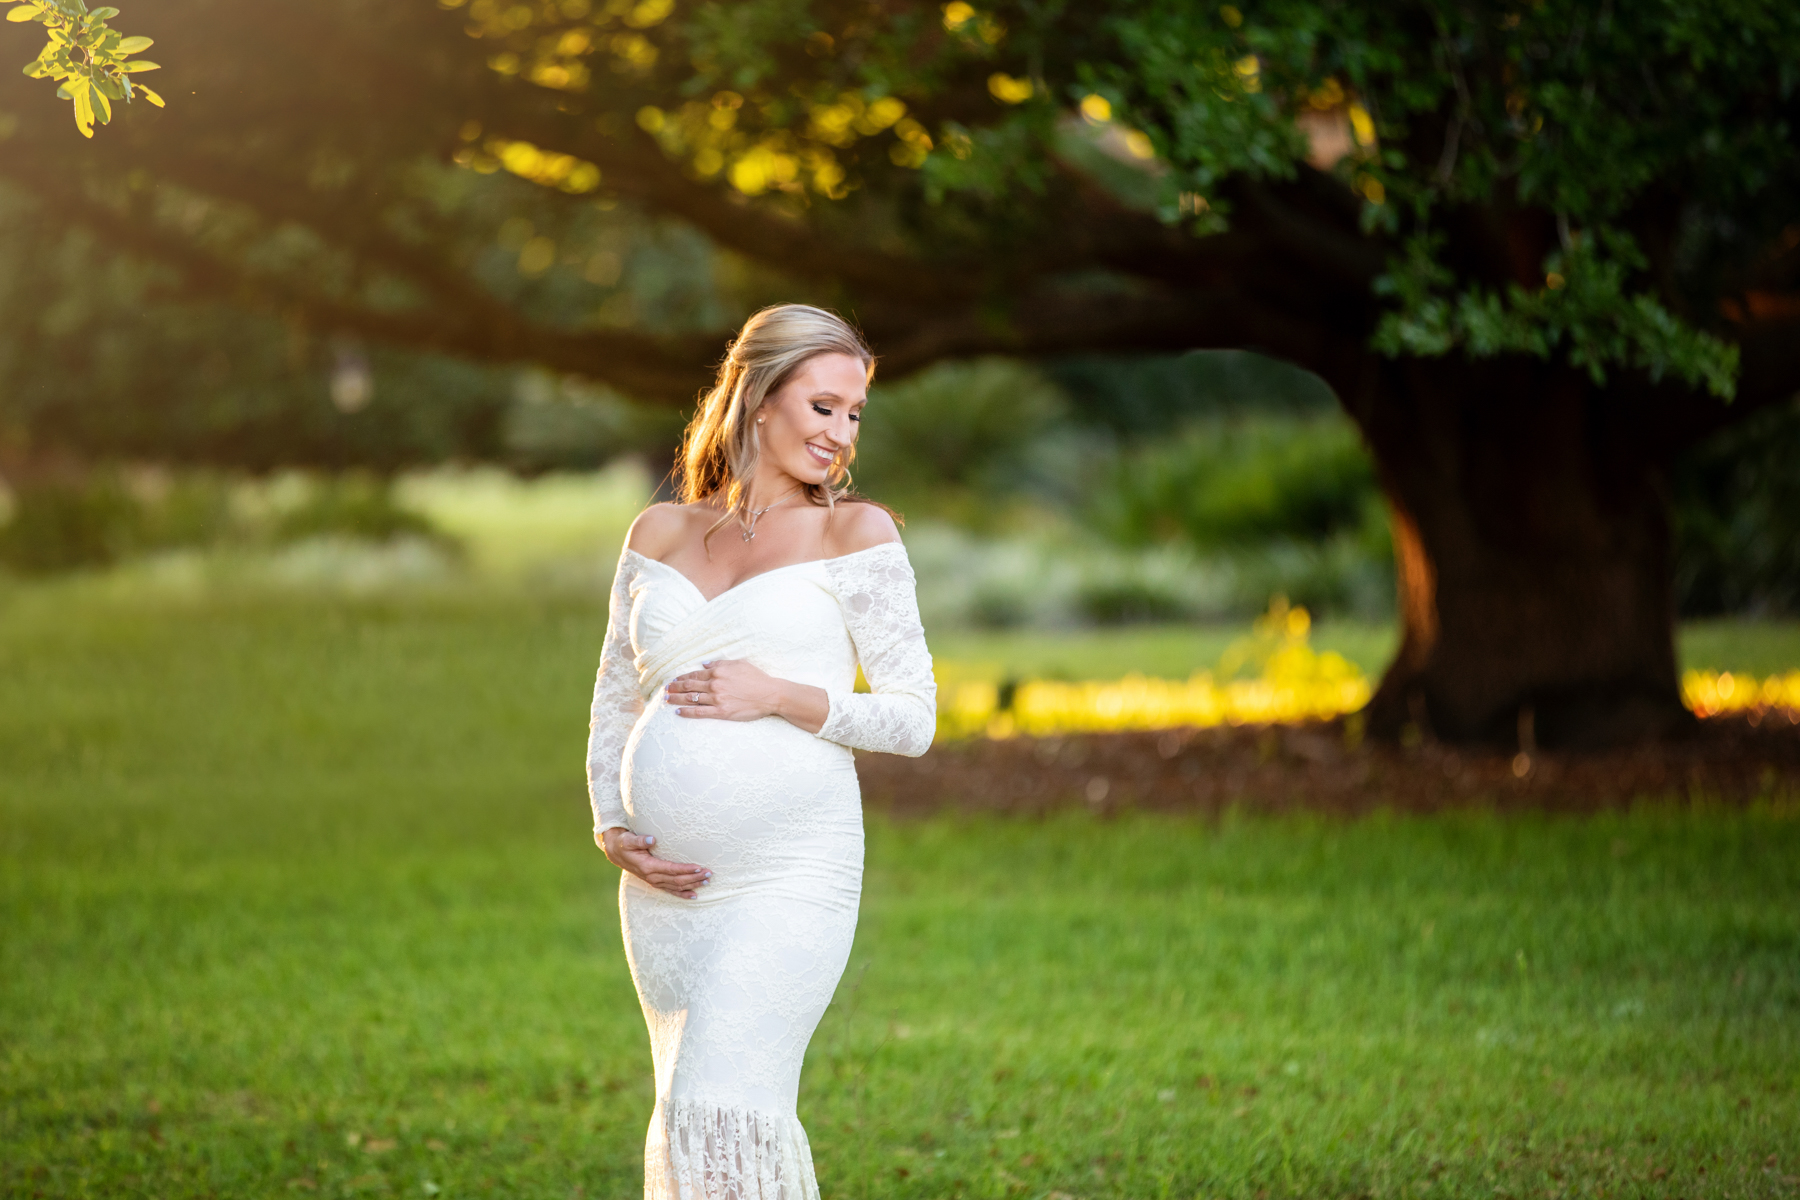 Beautiful outdoor maternity photos